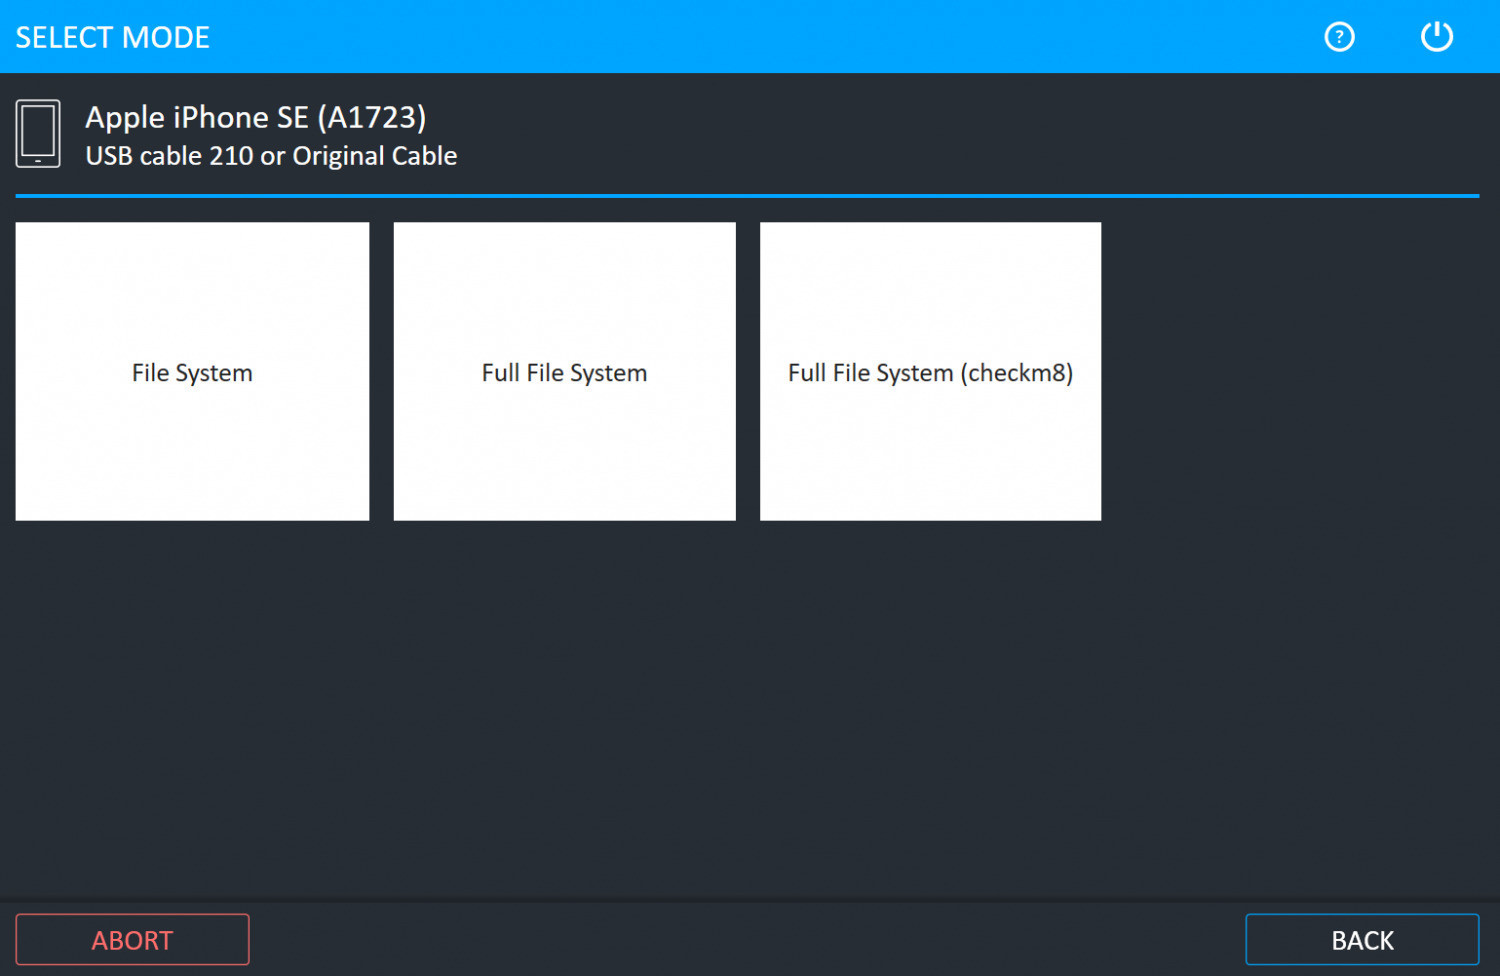 Gambar 2. Untuk menggunakan metode Full File System dengan fitur Checkm8, pilih menu Full File System (checkm8).